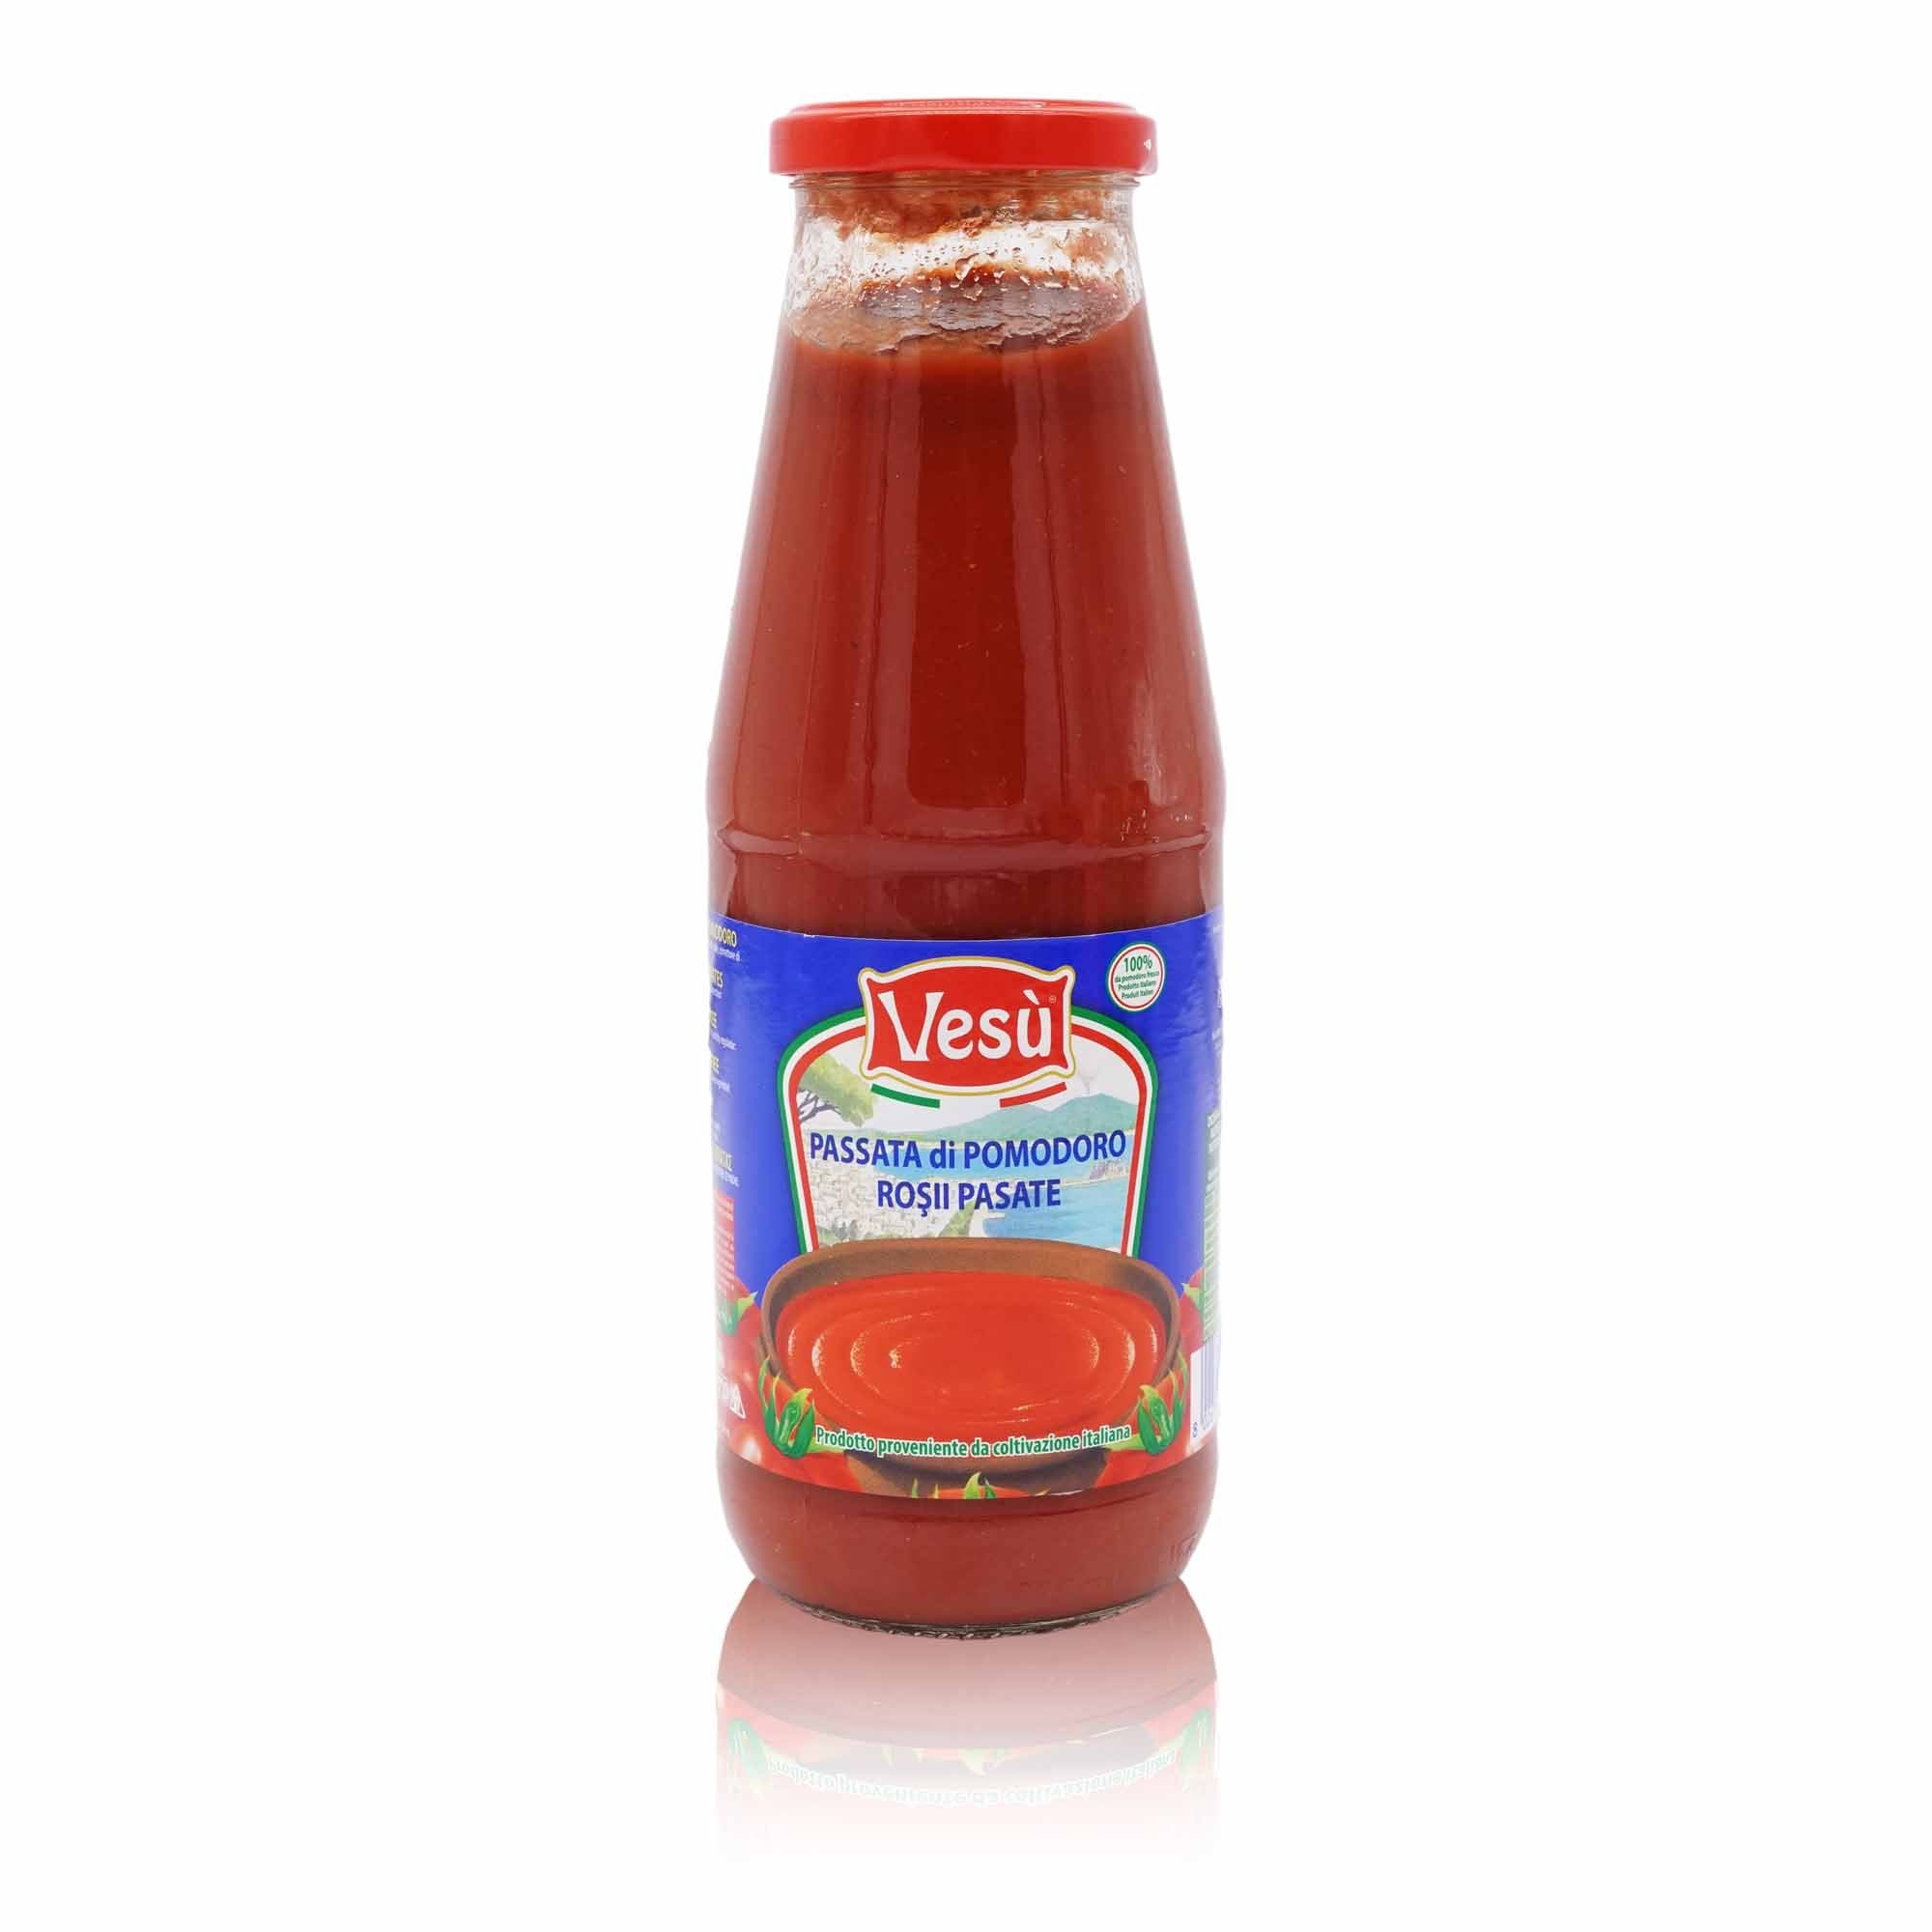 VESÙ Passata di pomodoro – passierte Tomaten - 0,7l